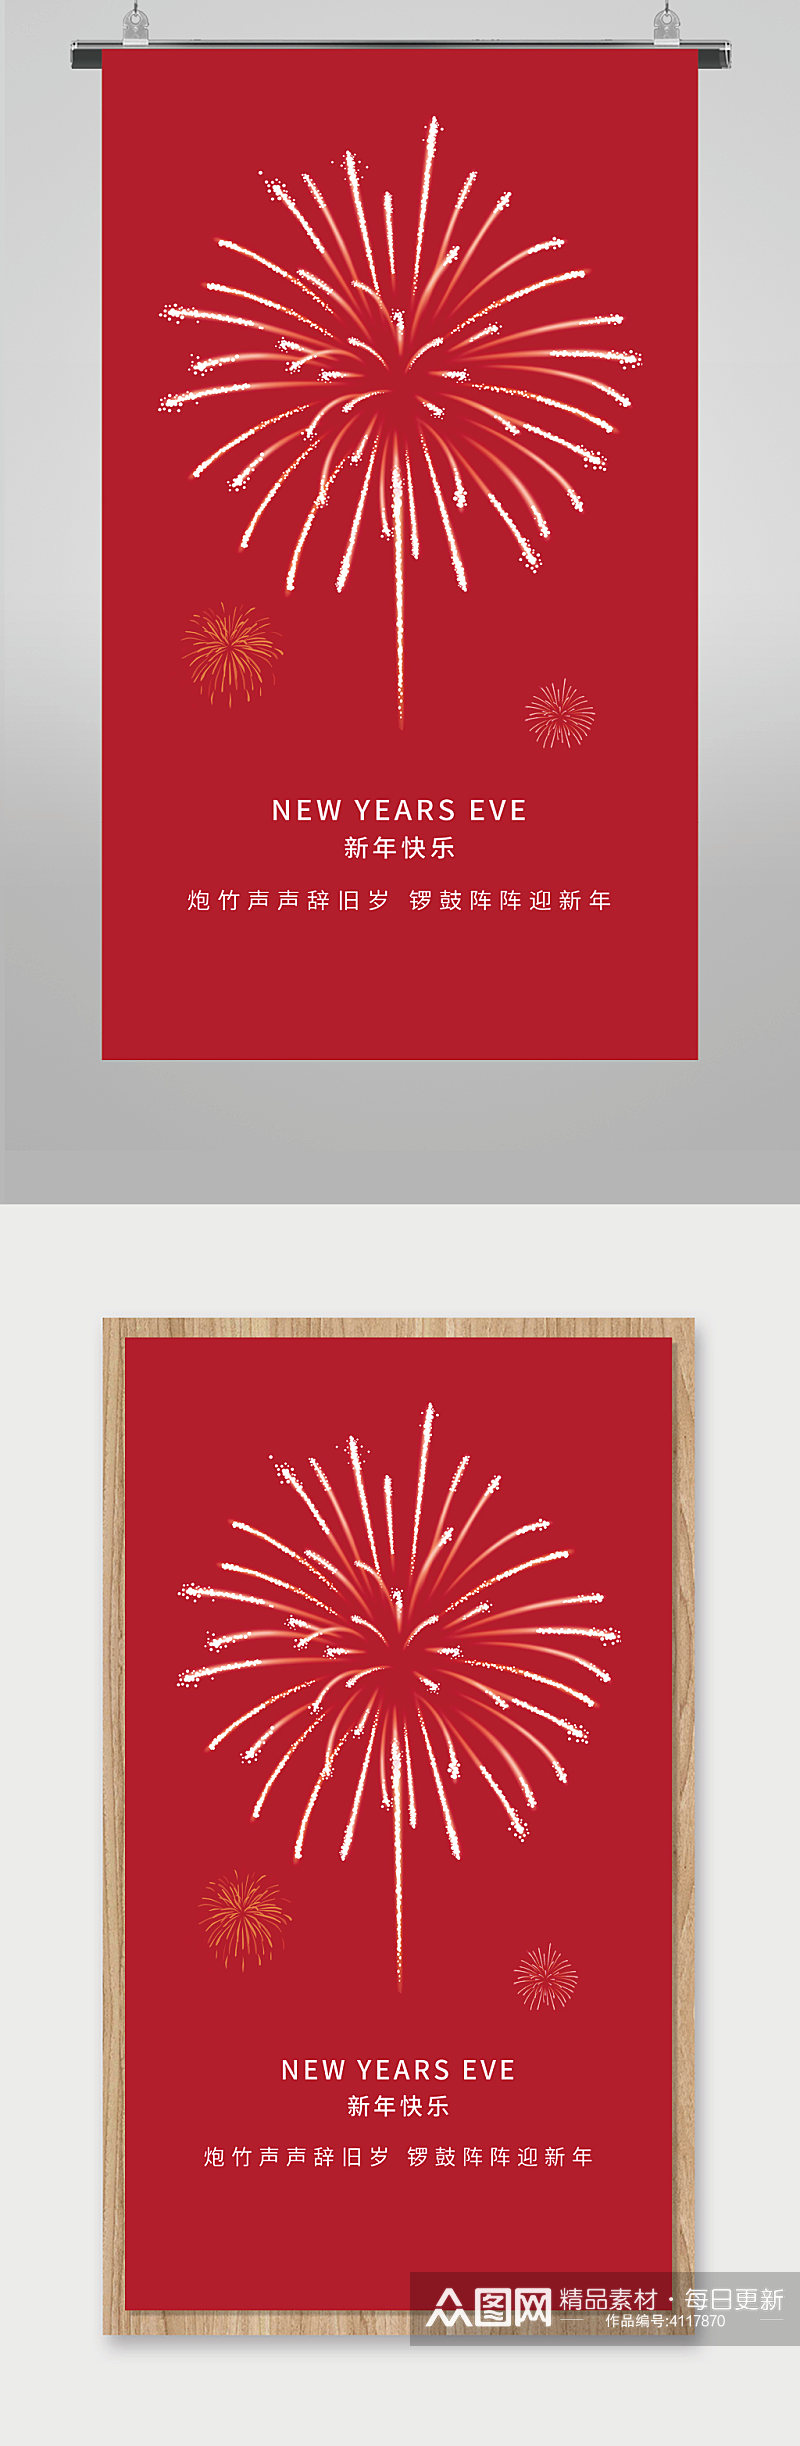 红色大气新年快乐海报素材